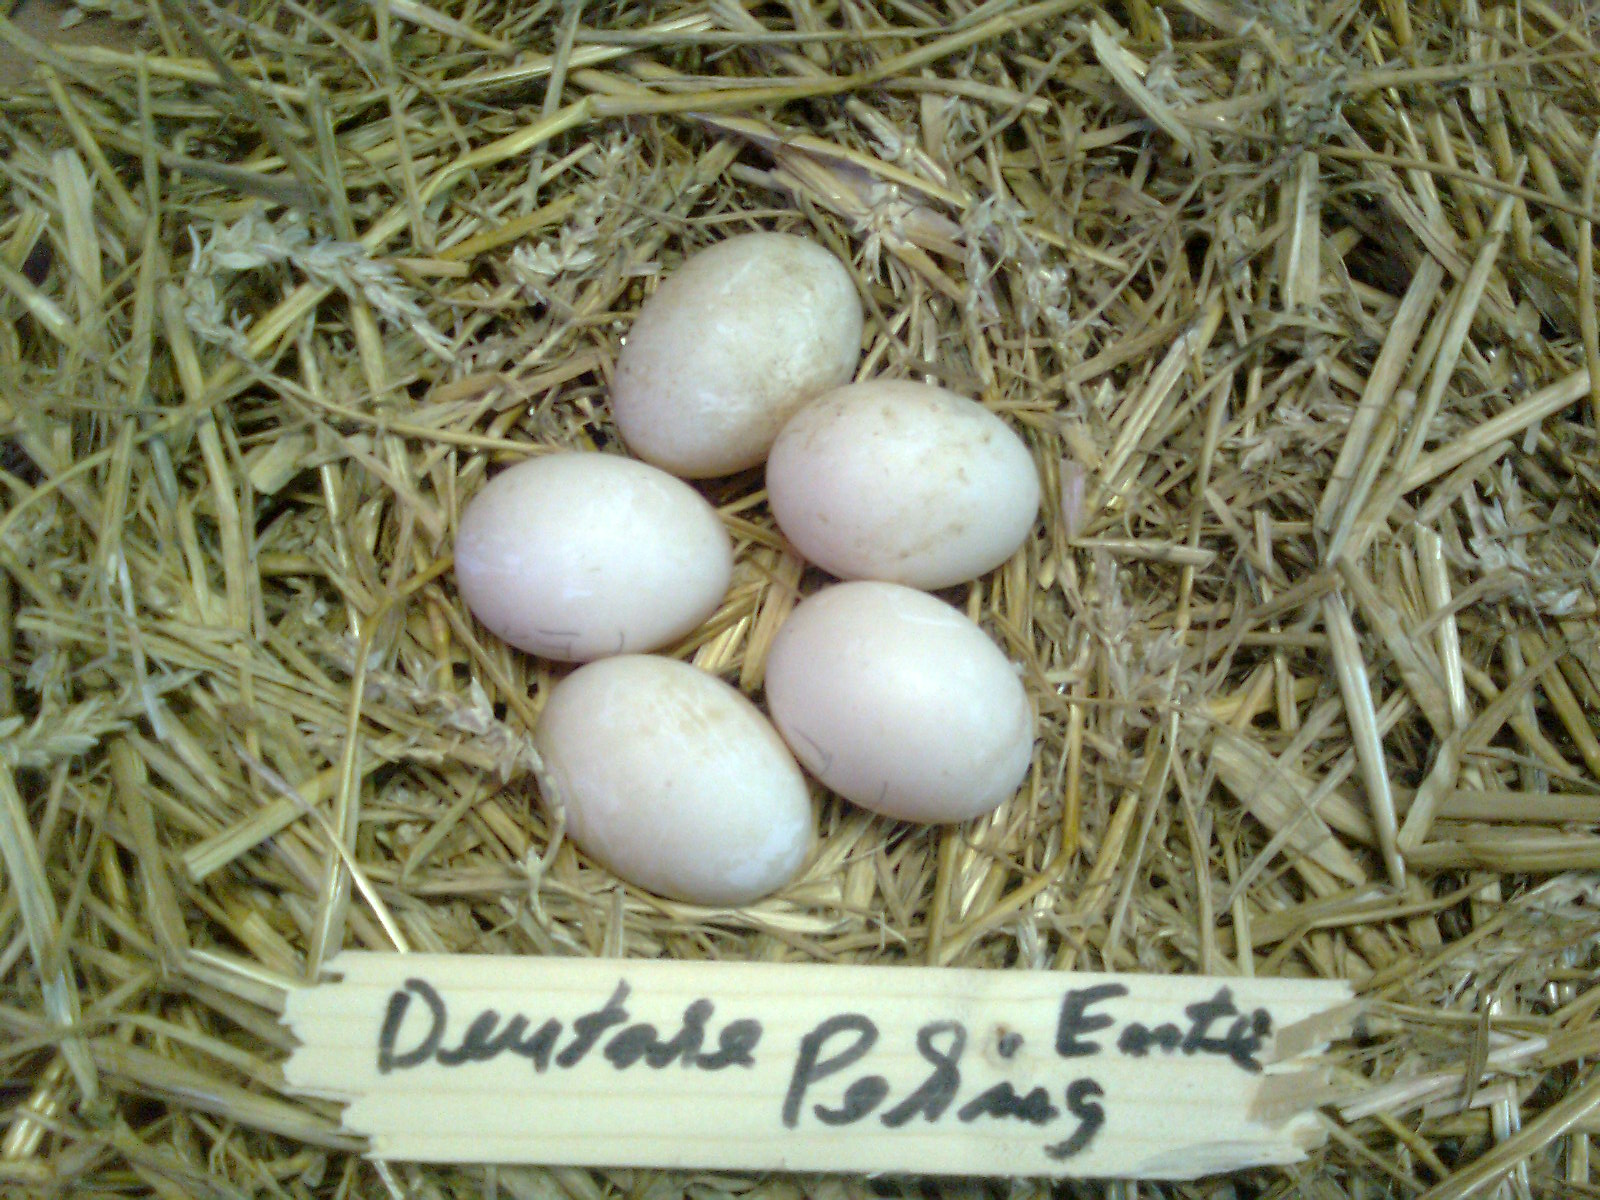 Deutsche Pekingenten-Eier ca. 80g schwer
Brutdauer 28 Tage